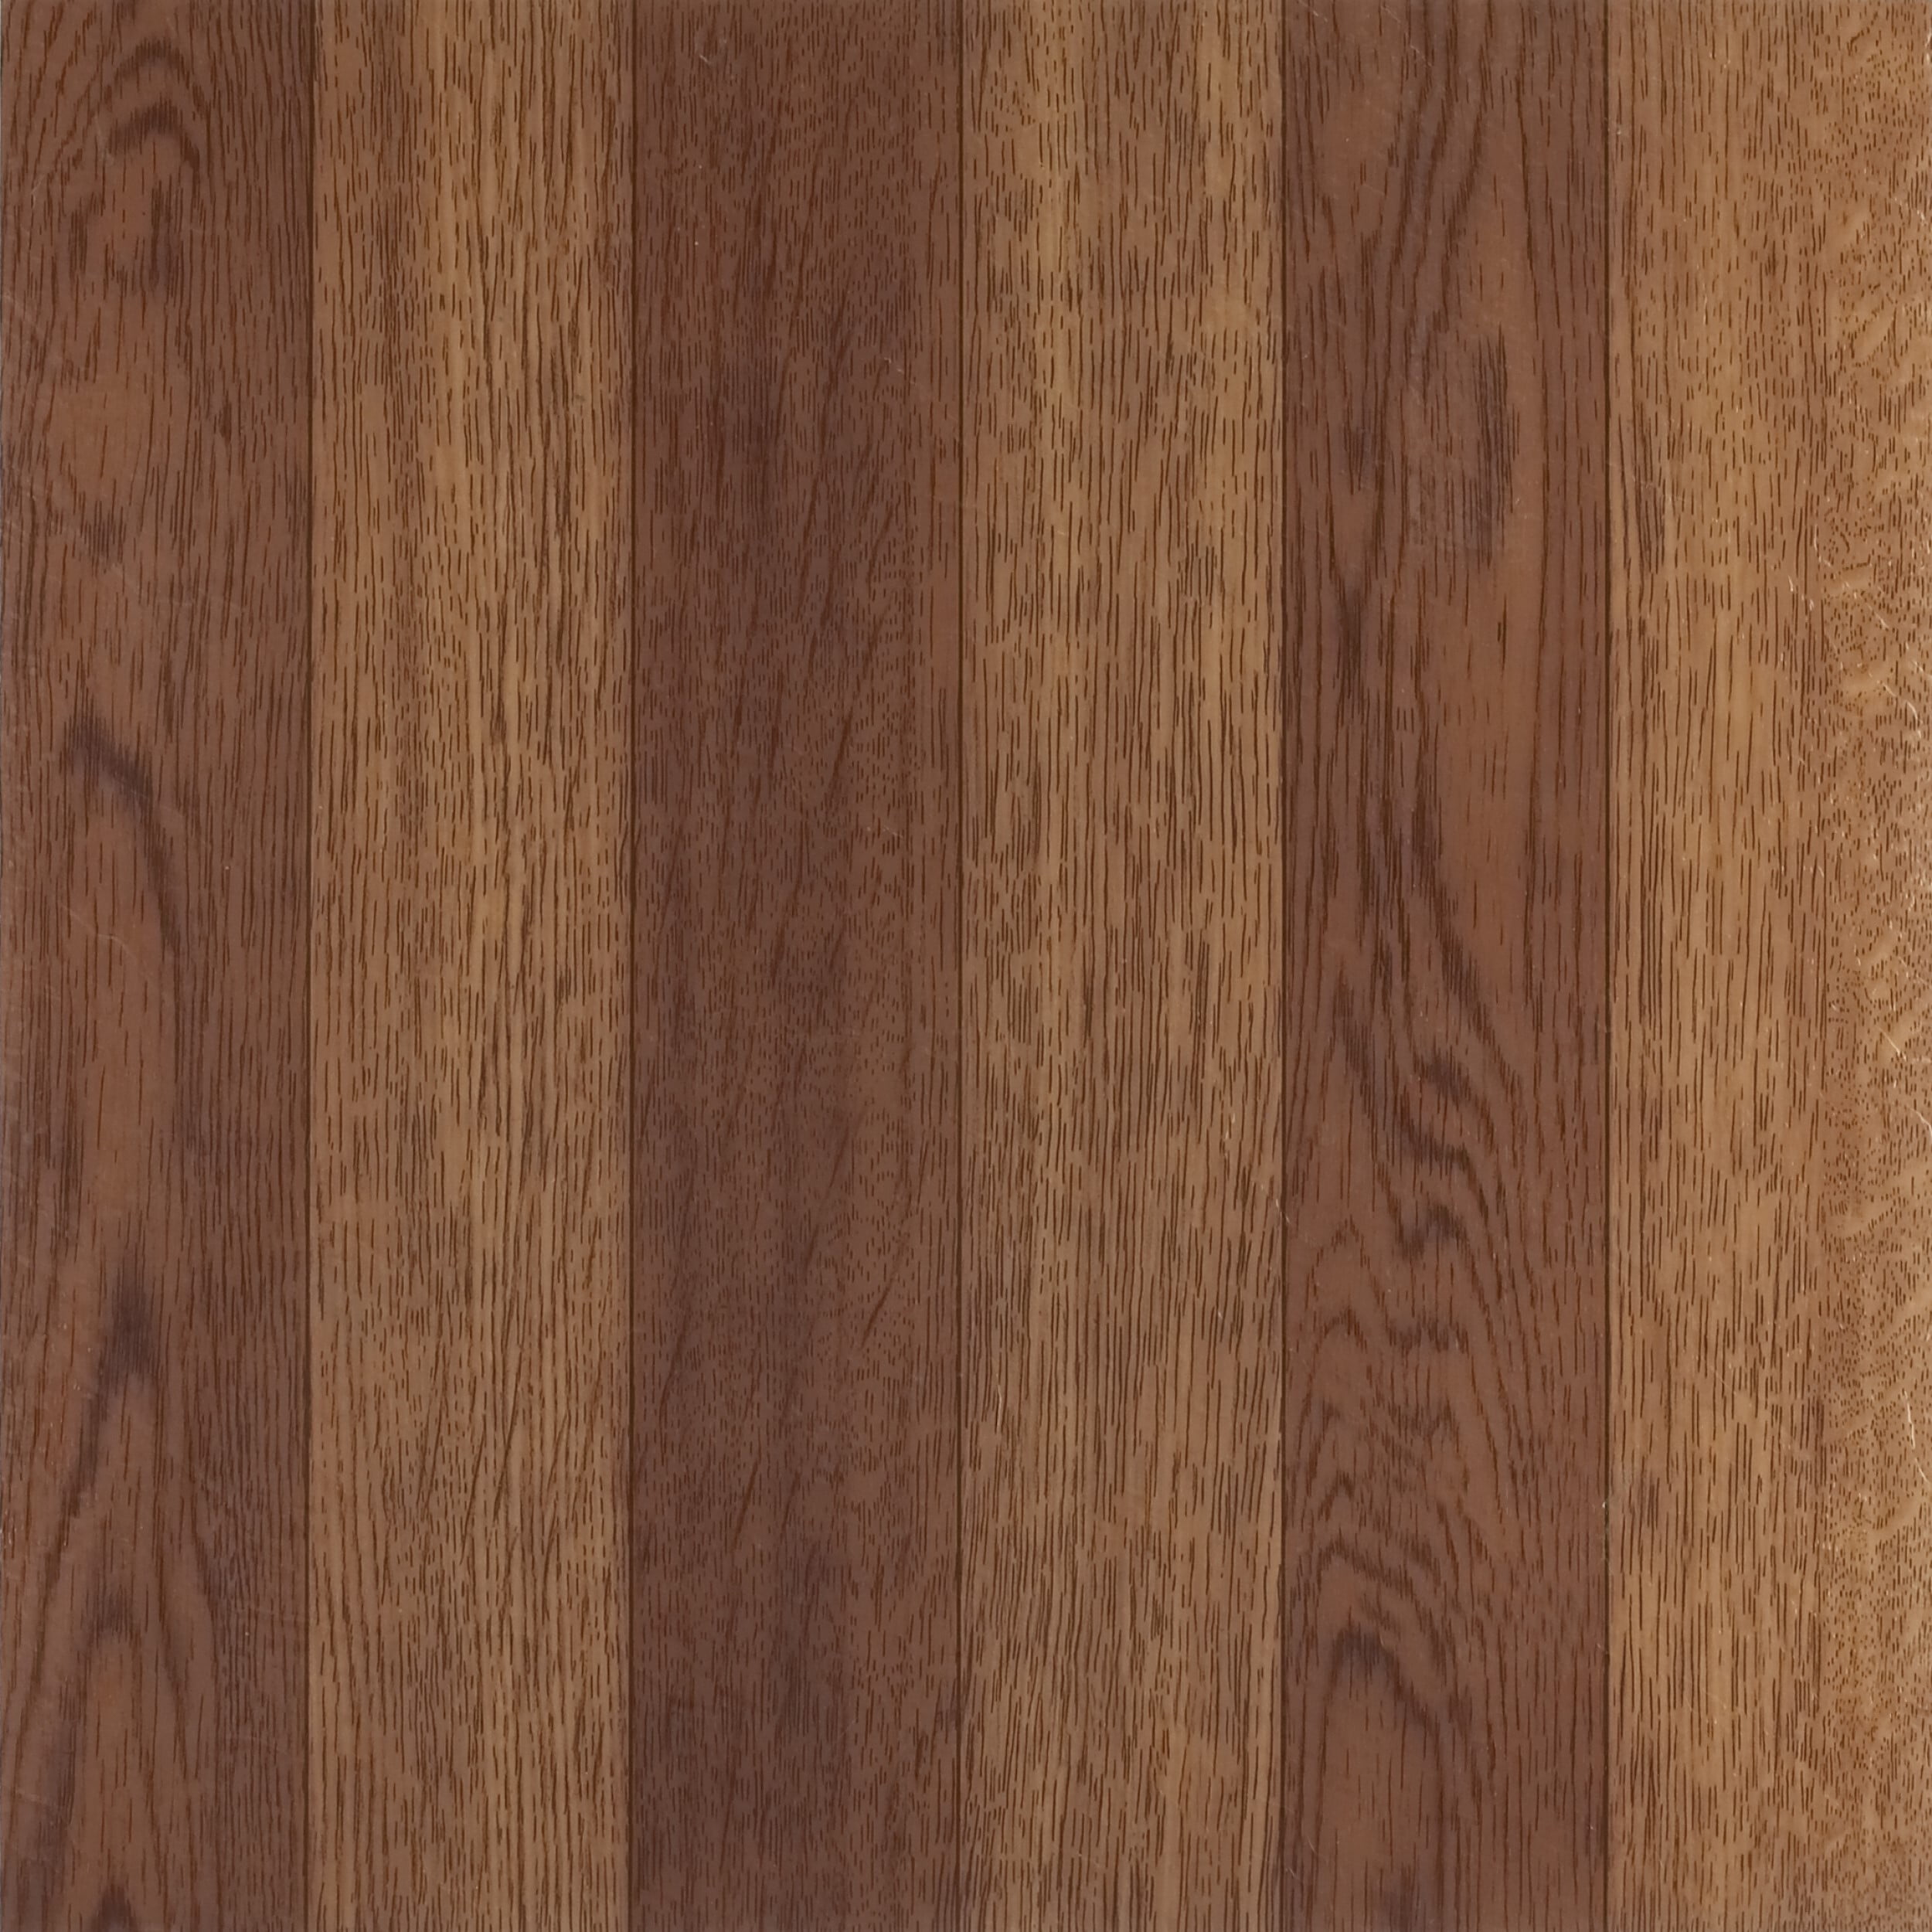 Achim Home Furnishings FTVWD22320 Nexus 12-Inch Vinyl Tile Set of 2 20-Pack Wood Medium Oak Plank-Look